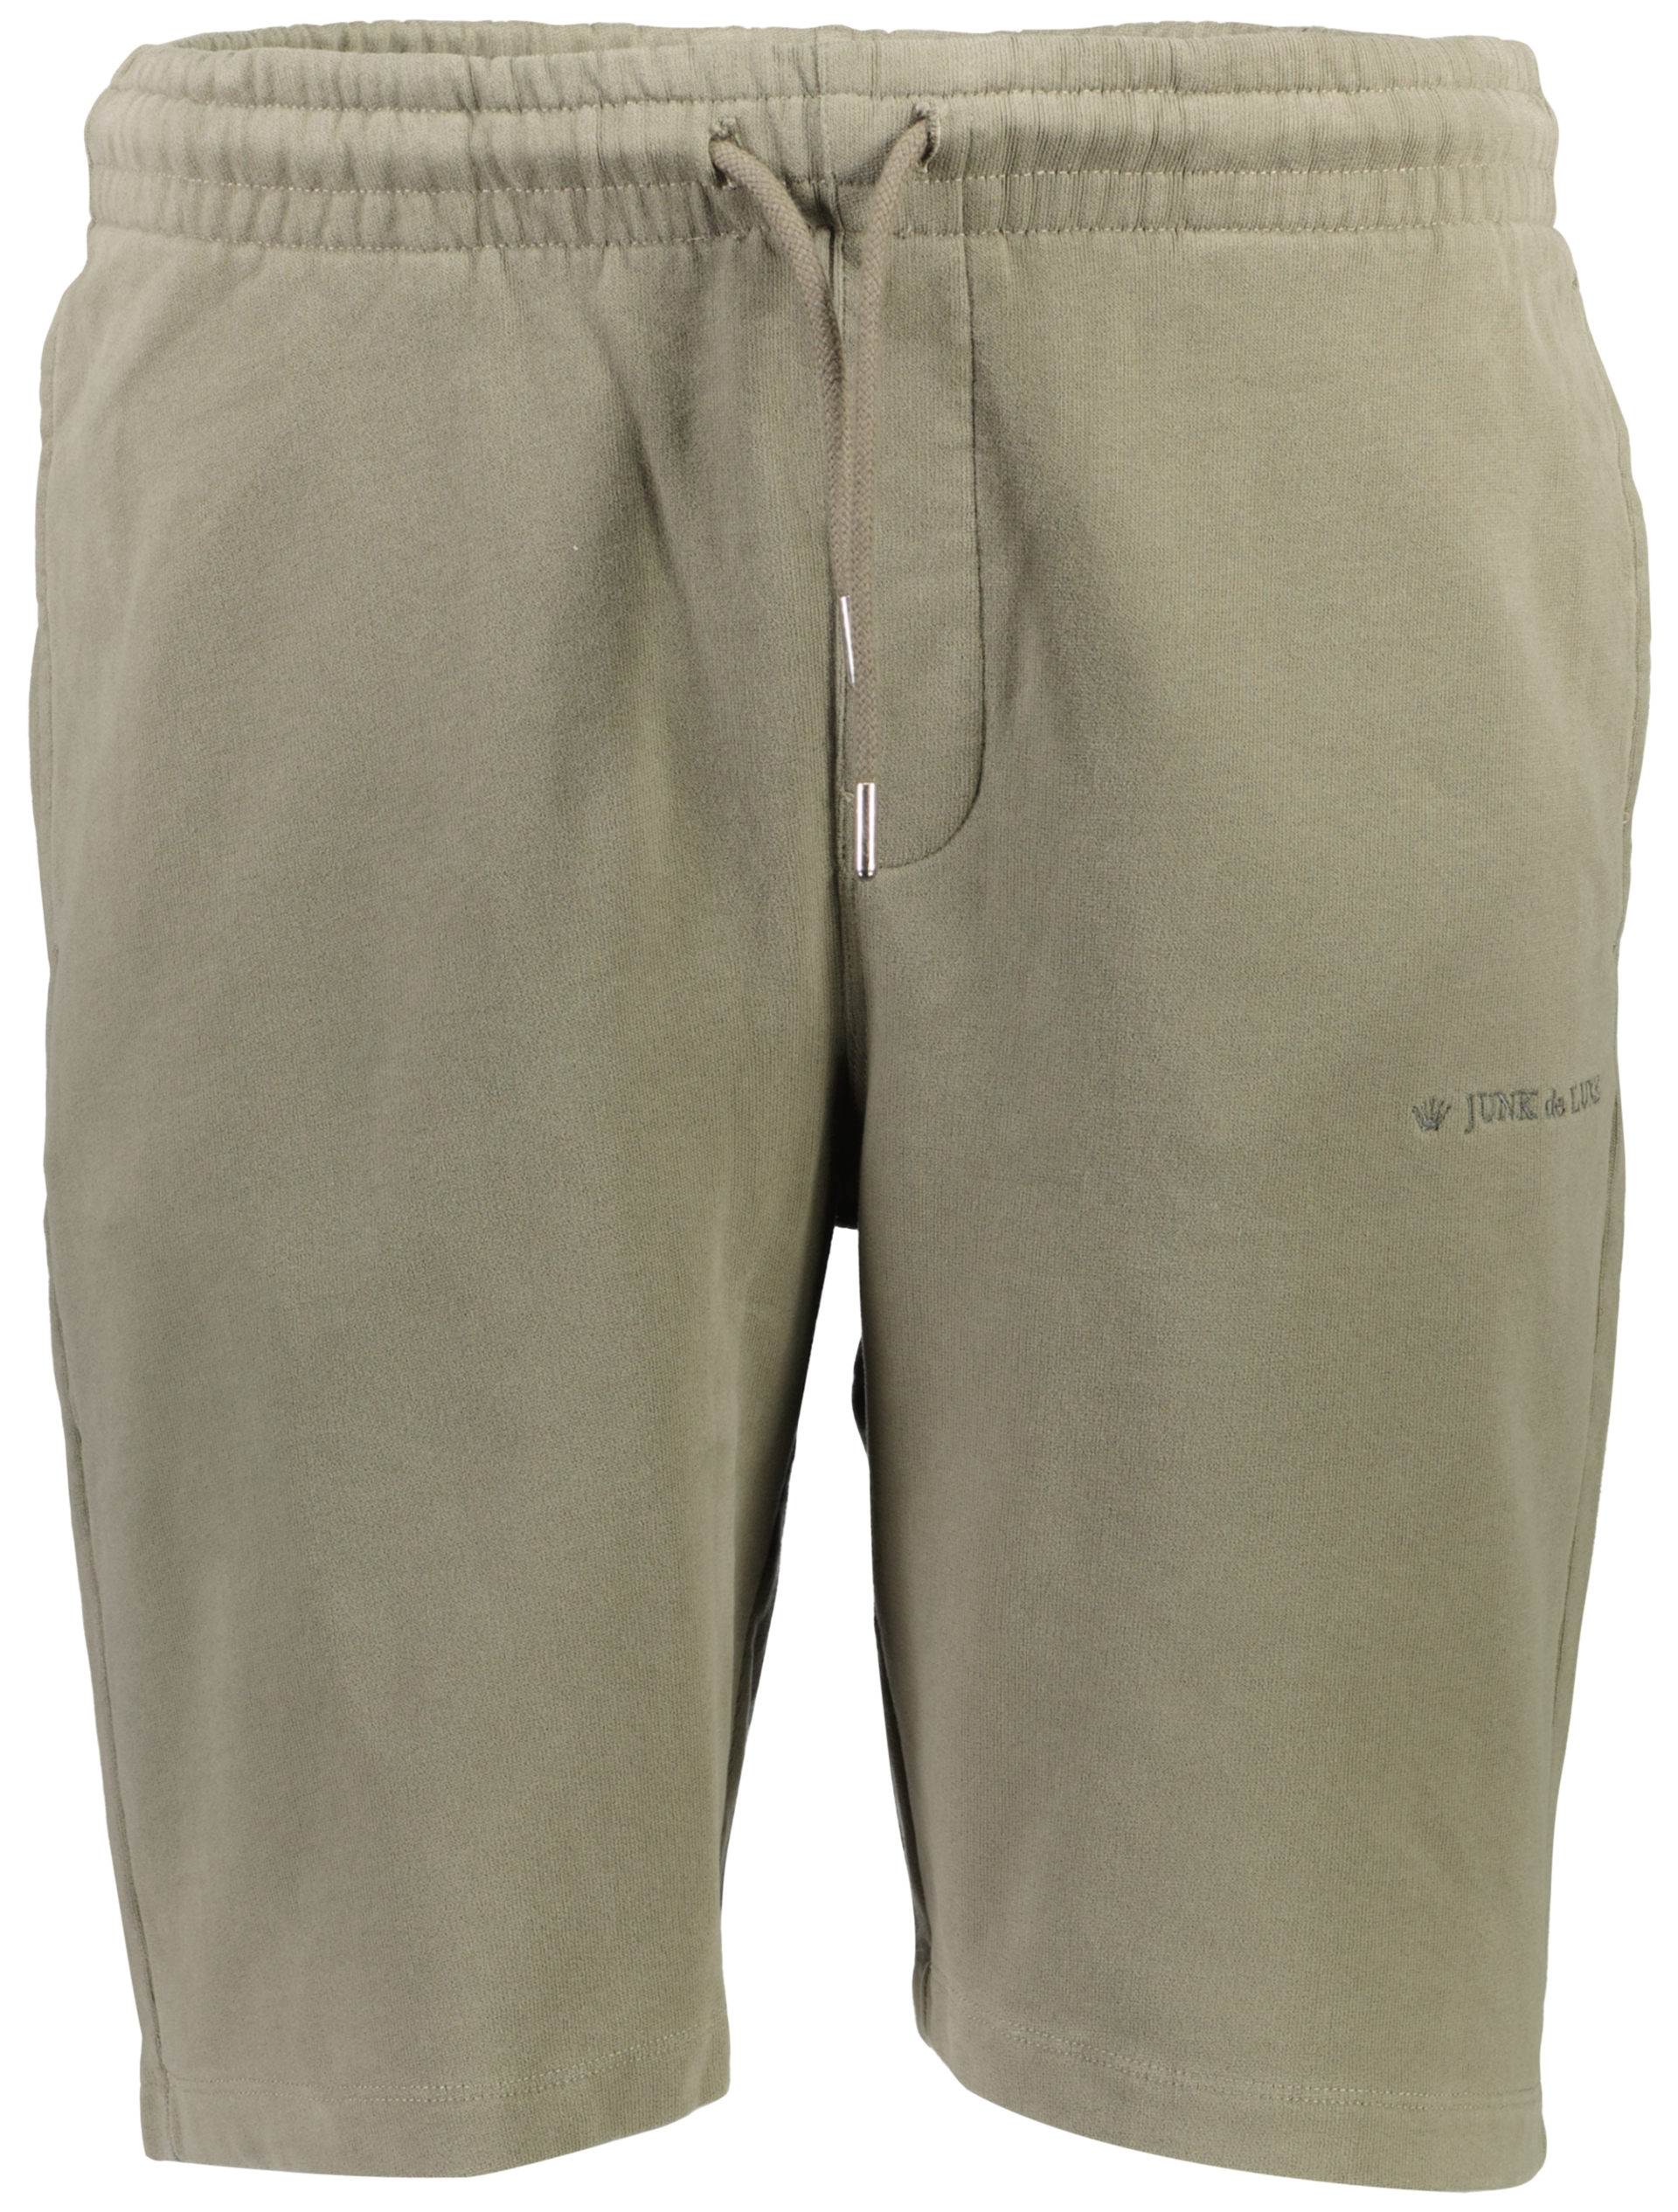 Junk de Luxe Casual shorts grön / lt dusty army